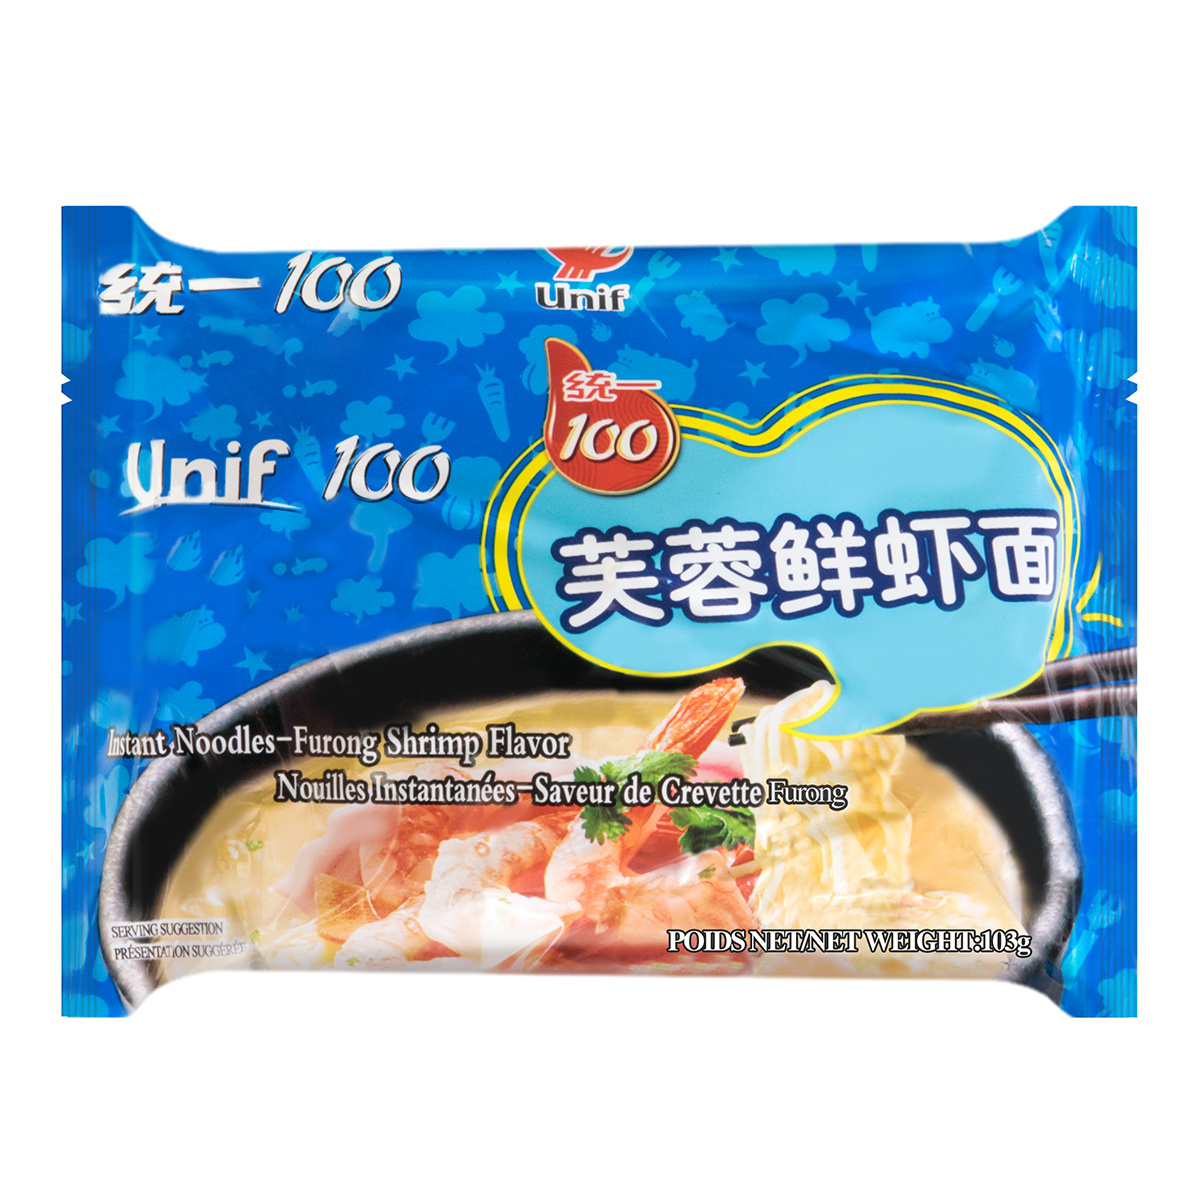 UNIF-100 Noodle Furong Shrimp 120g